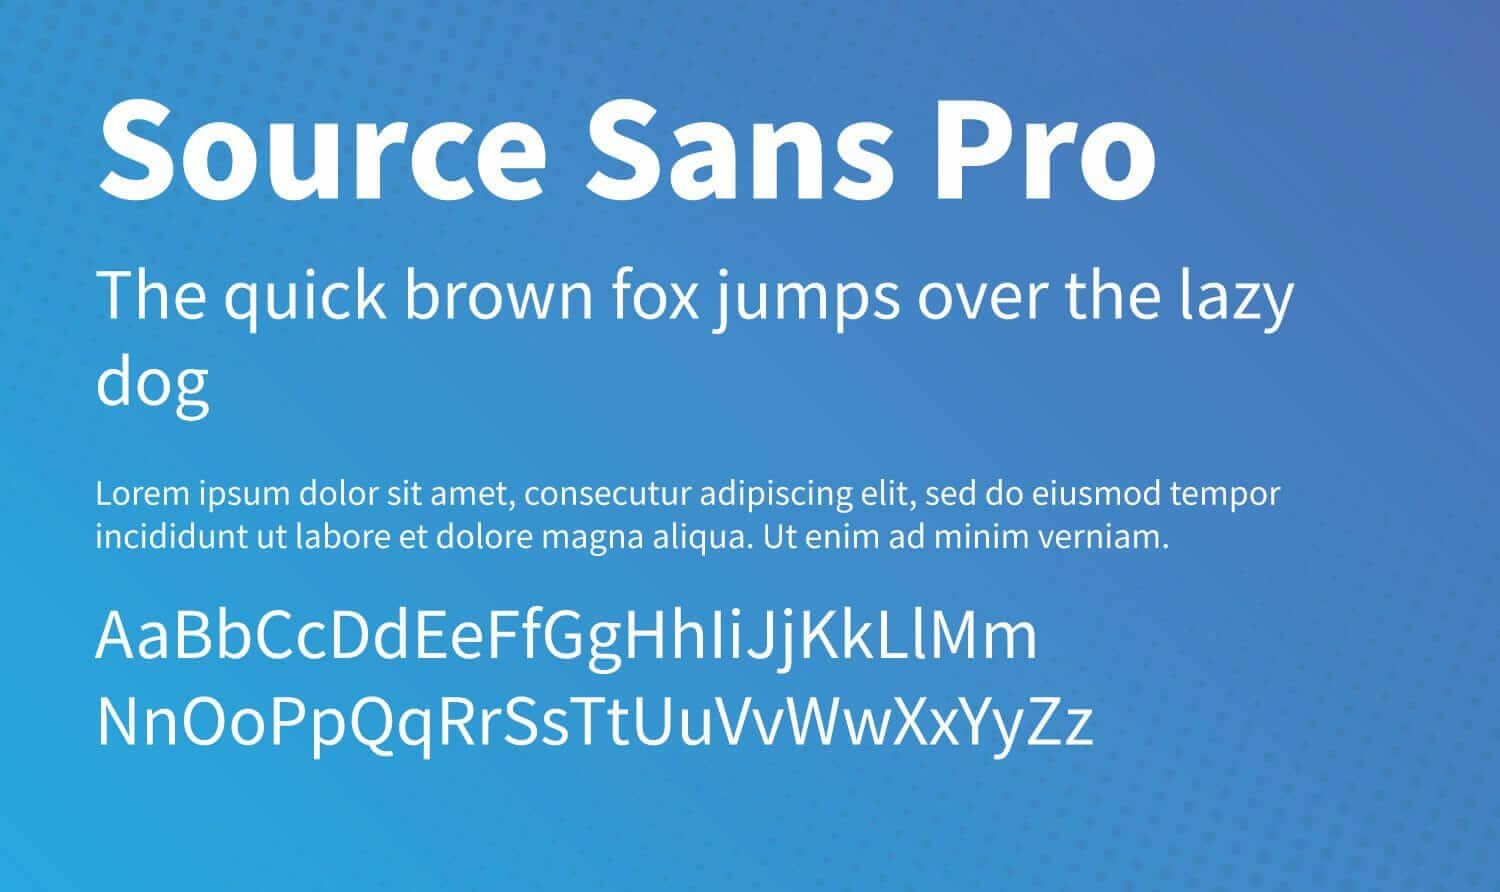 Source Sans Pro